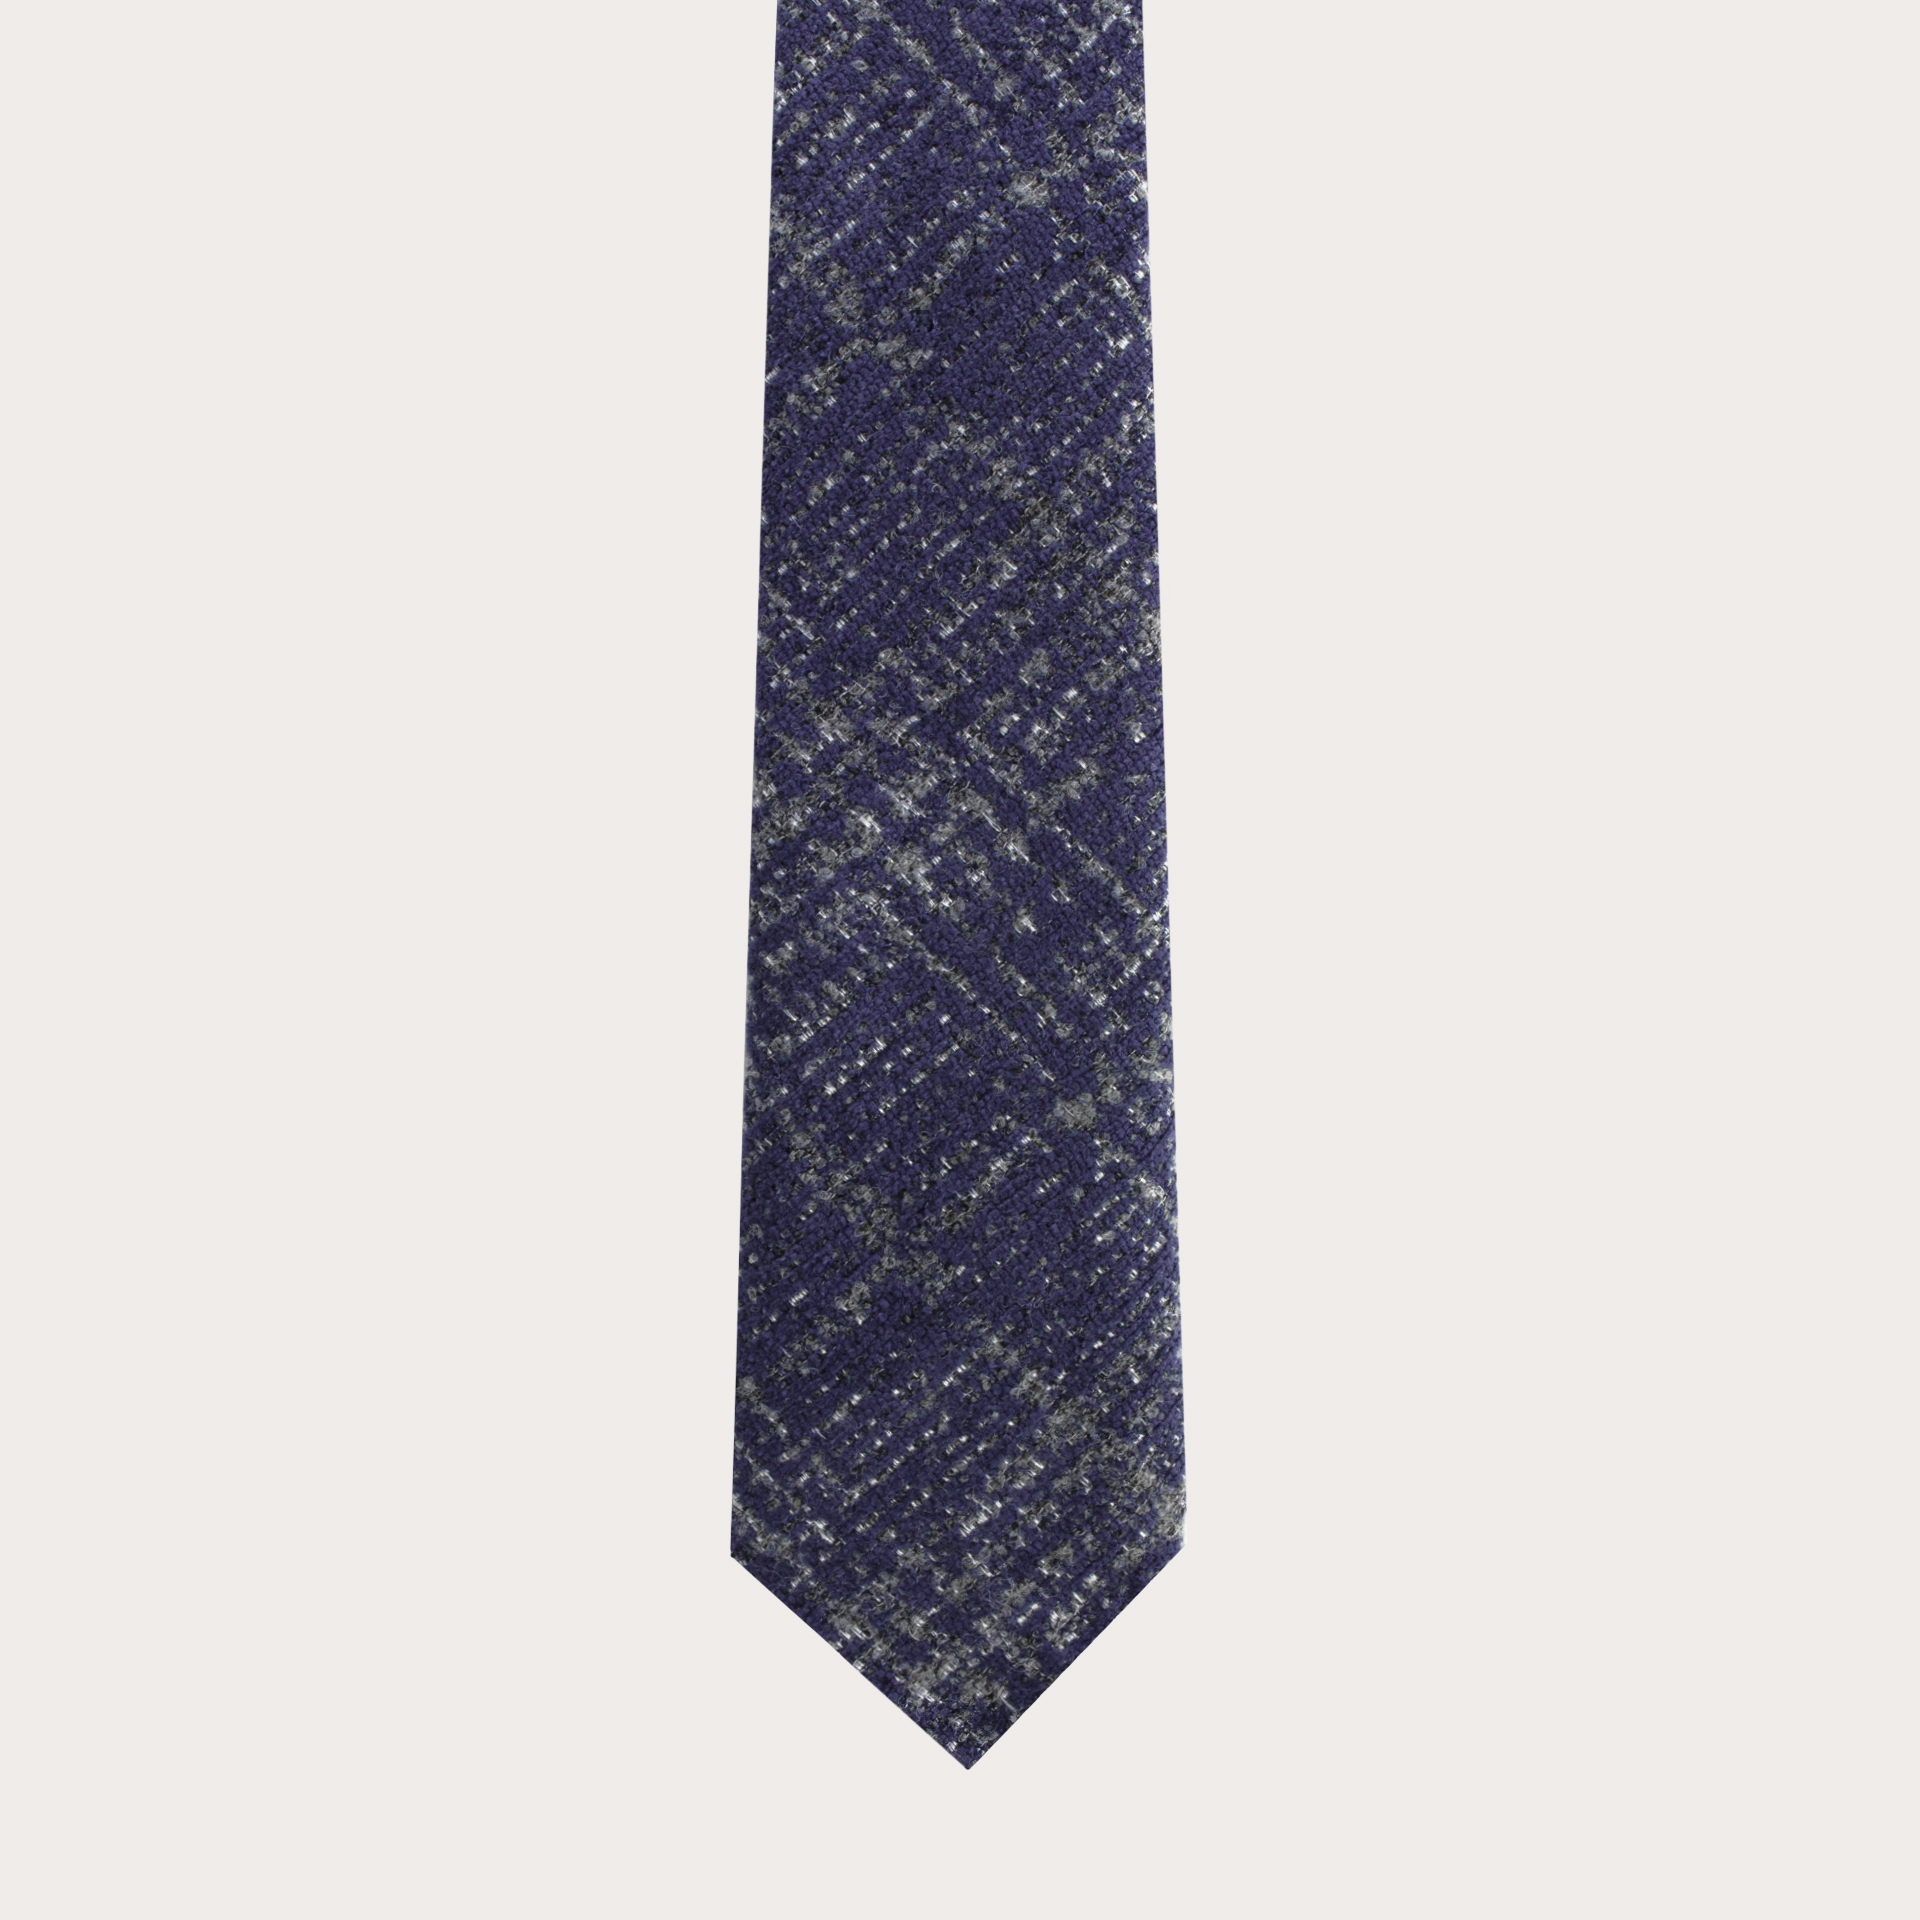 Cravate sans doublurerouge et noire en soie laine check tartans